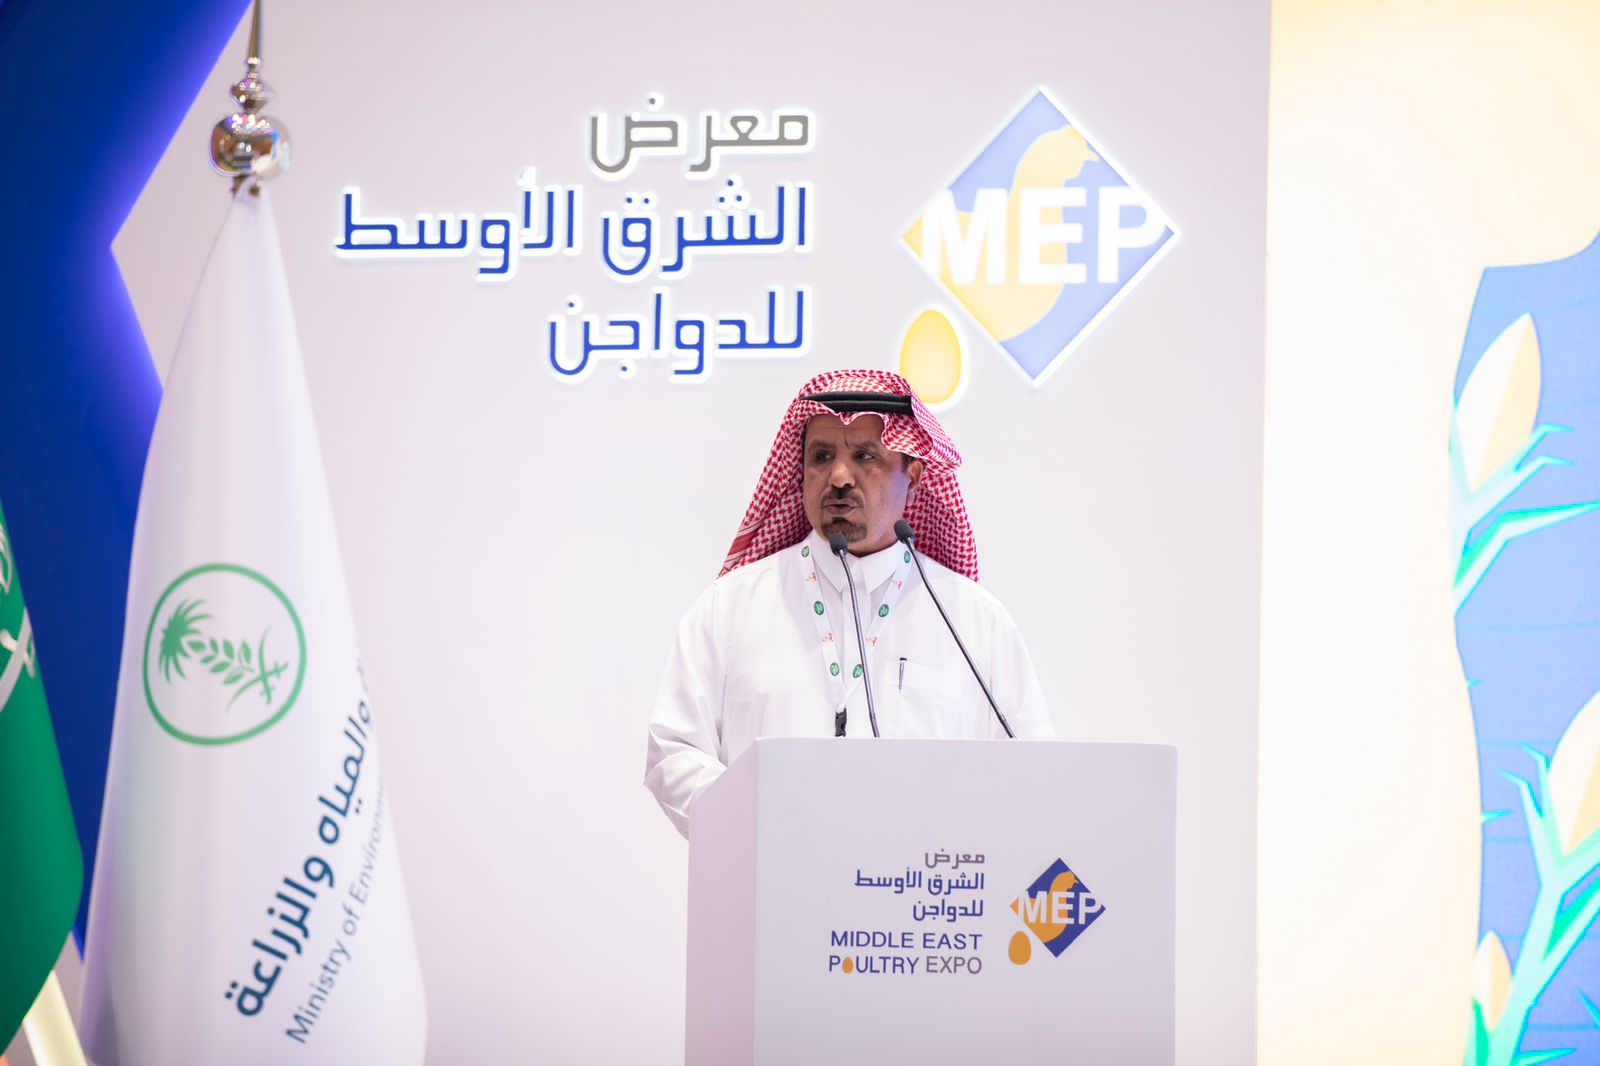 السعودية| انطلاق فعاليات "معرض الشرق الأوسط للدواجن" في دورته الثانية بالرياض